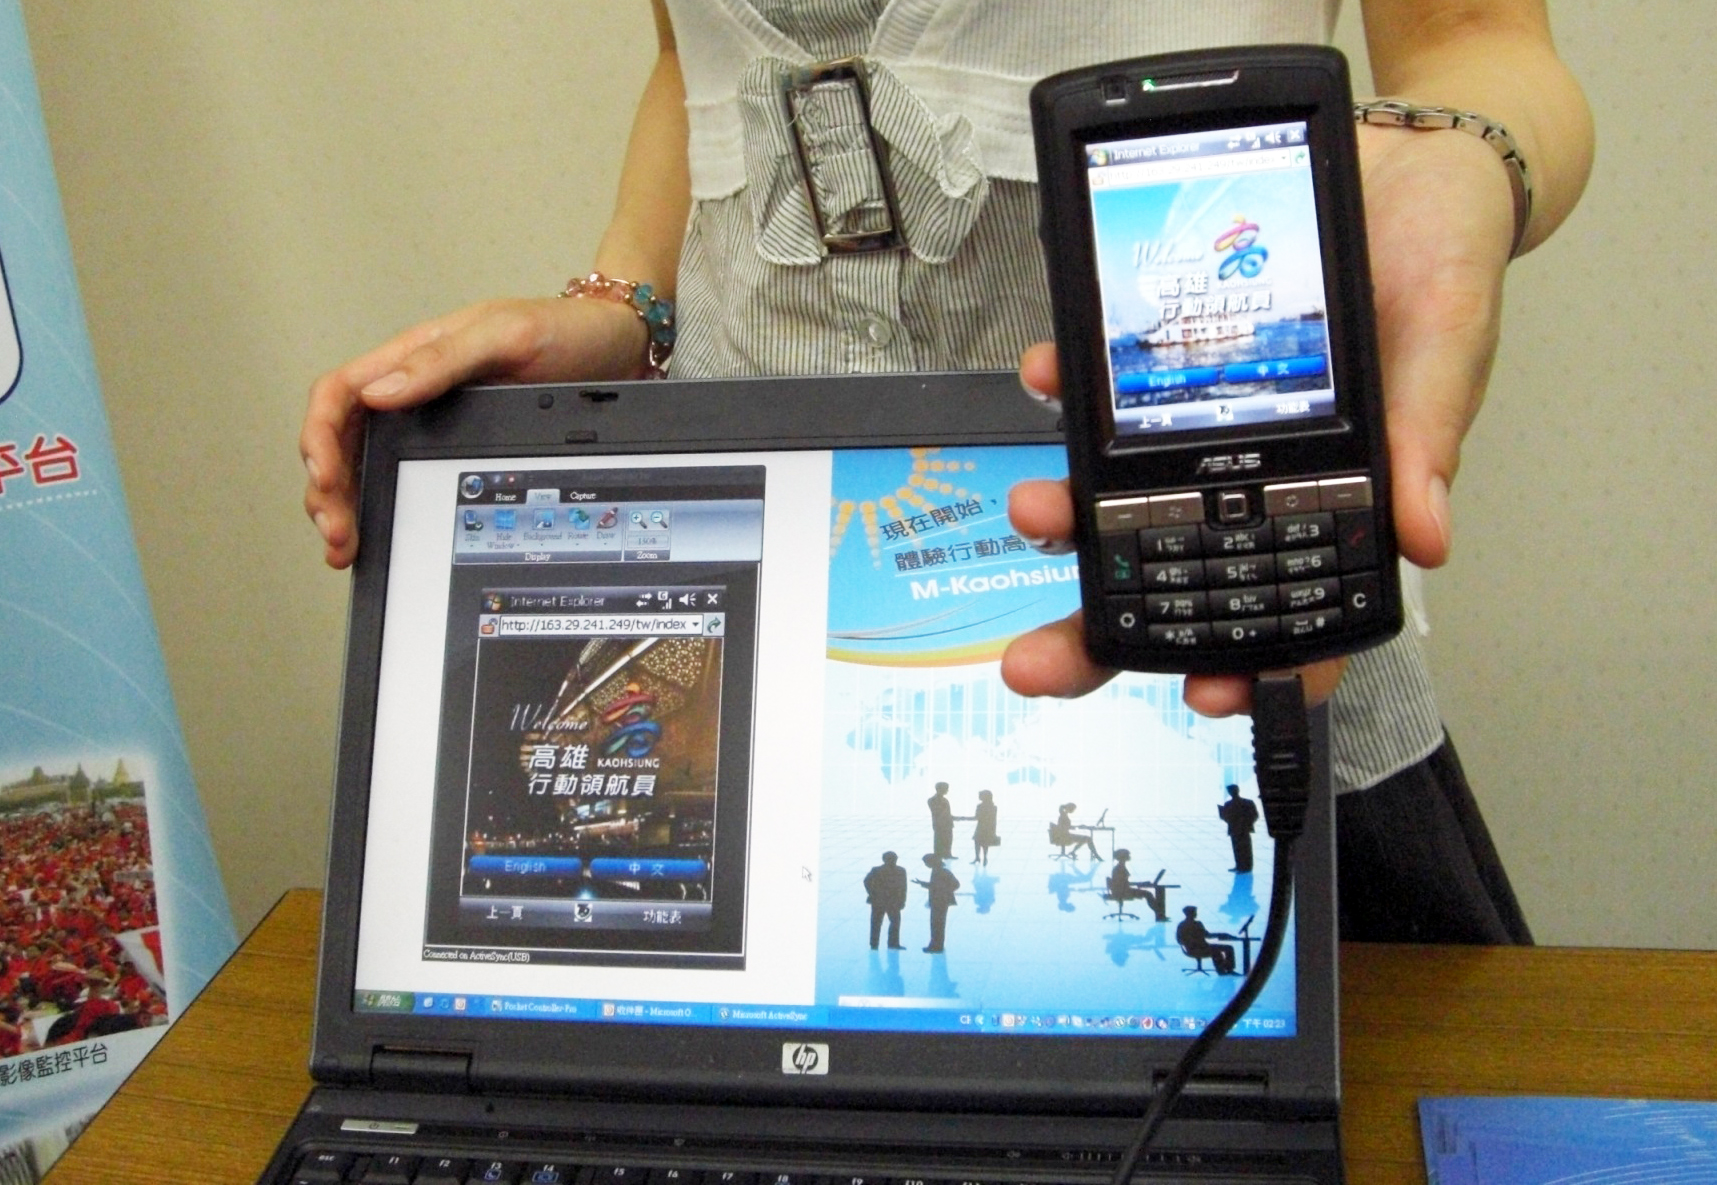 高雄市在7月31日前推出免費WiMAX無線上網服務，同時再提供世運與會貴賓的PDA中還包含「行動領航員」服務，結合GPS、無線通訊網路與客服中心等技術。(圖/高雄市政府交通局提供)